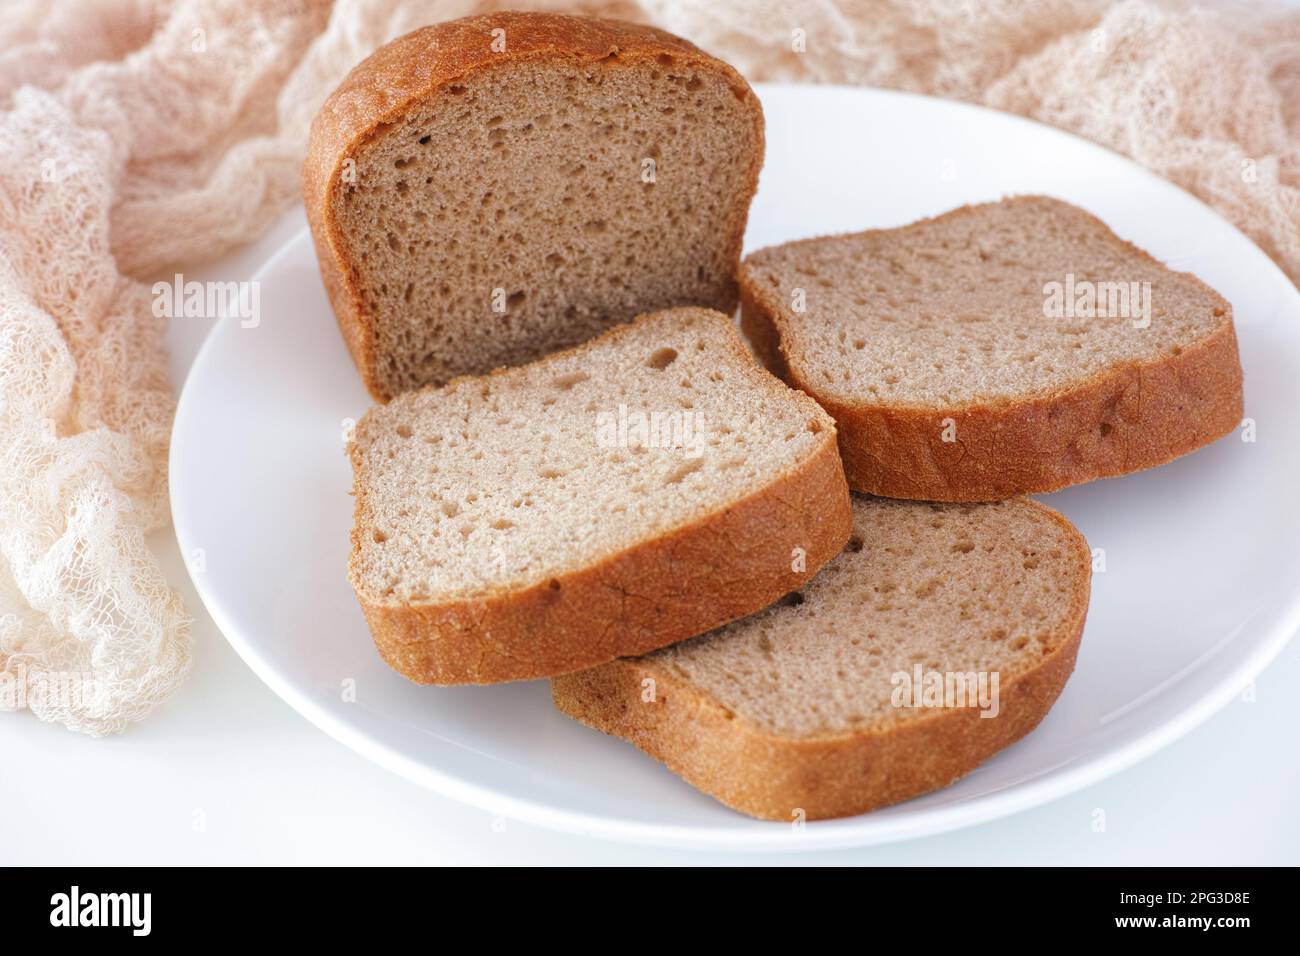 Tranches de pain sans gluten sur une assiette blanche. Gros plan. Banque D'Images